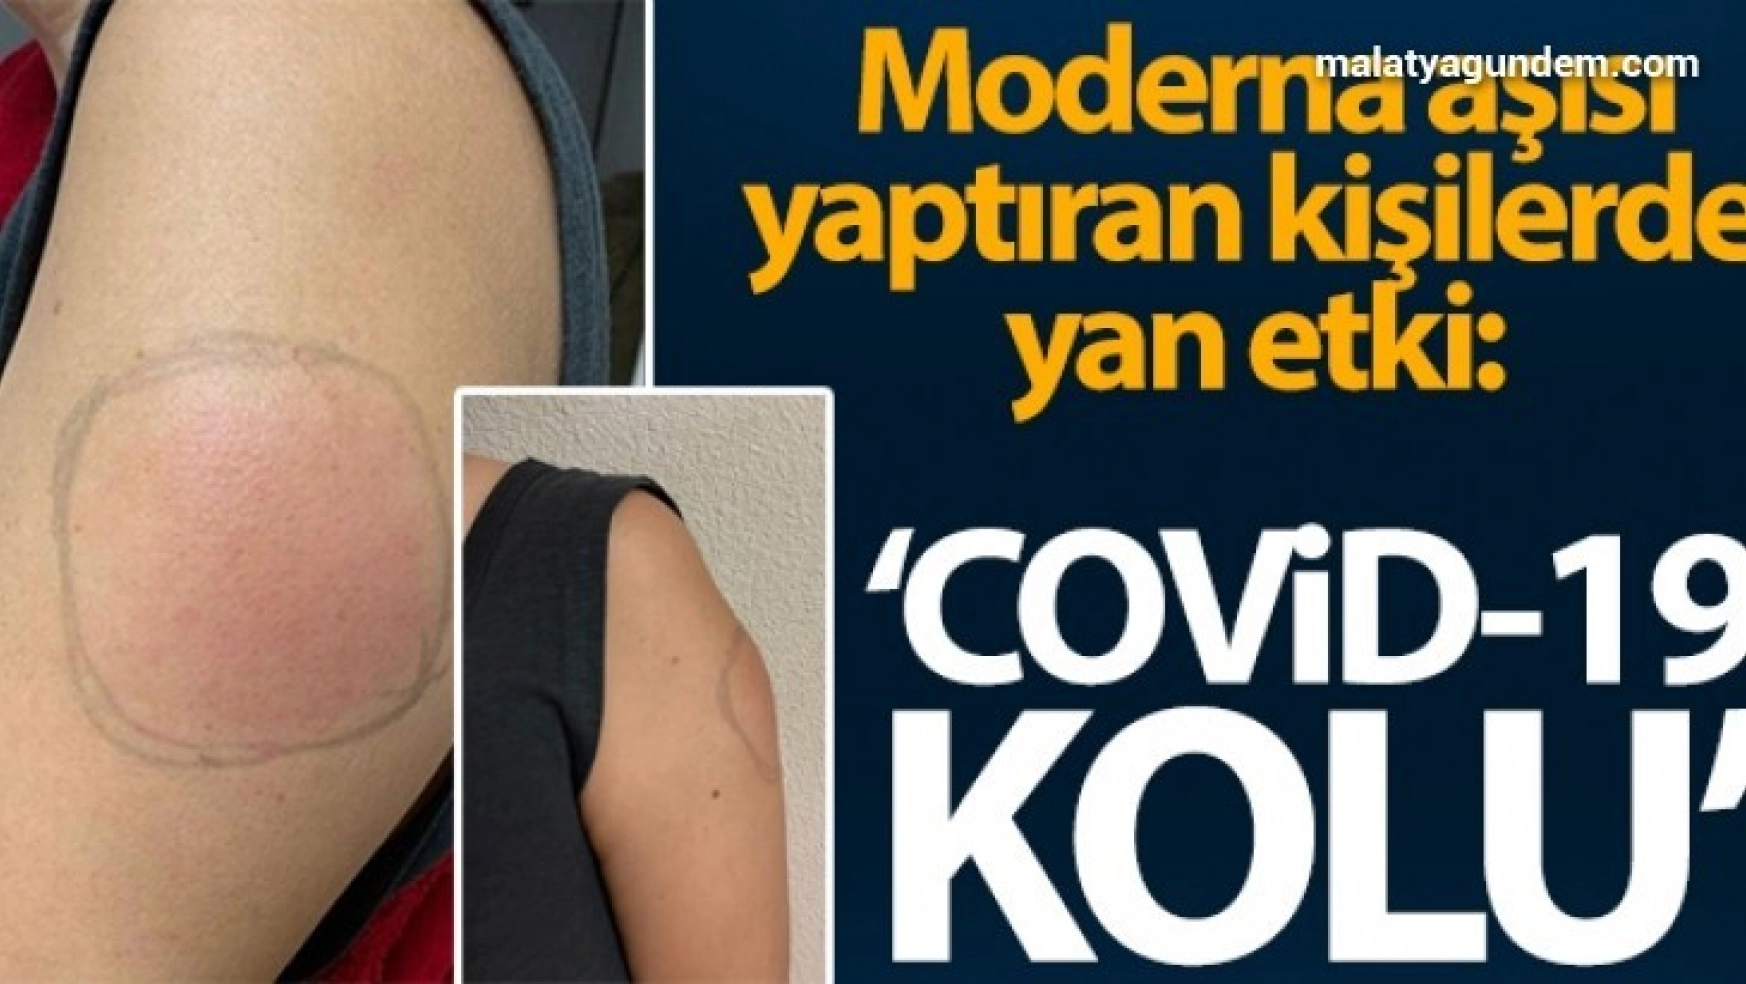 ABD'de Moderna aşısı yaptıran kişilerde yan etki: 'Covid-19 kolu'